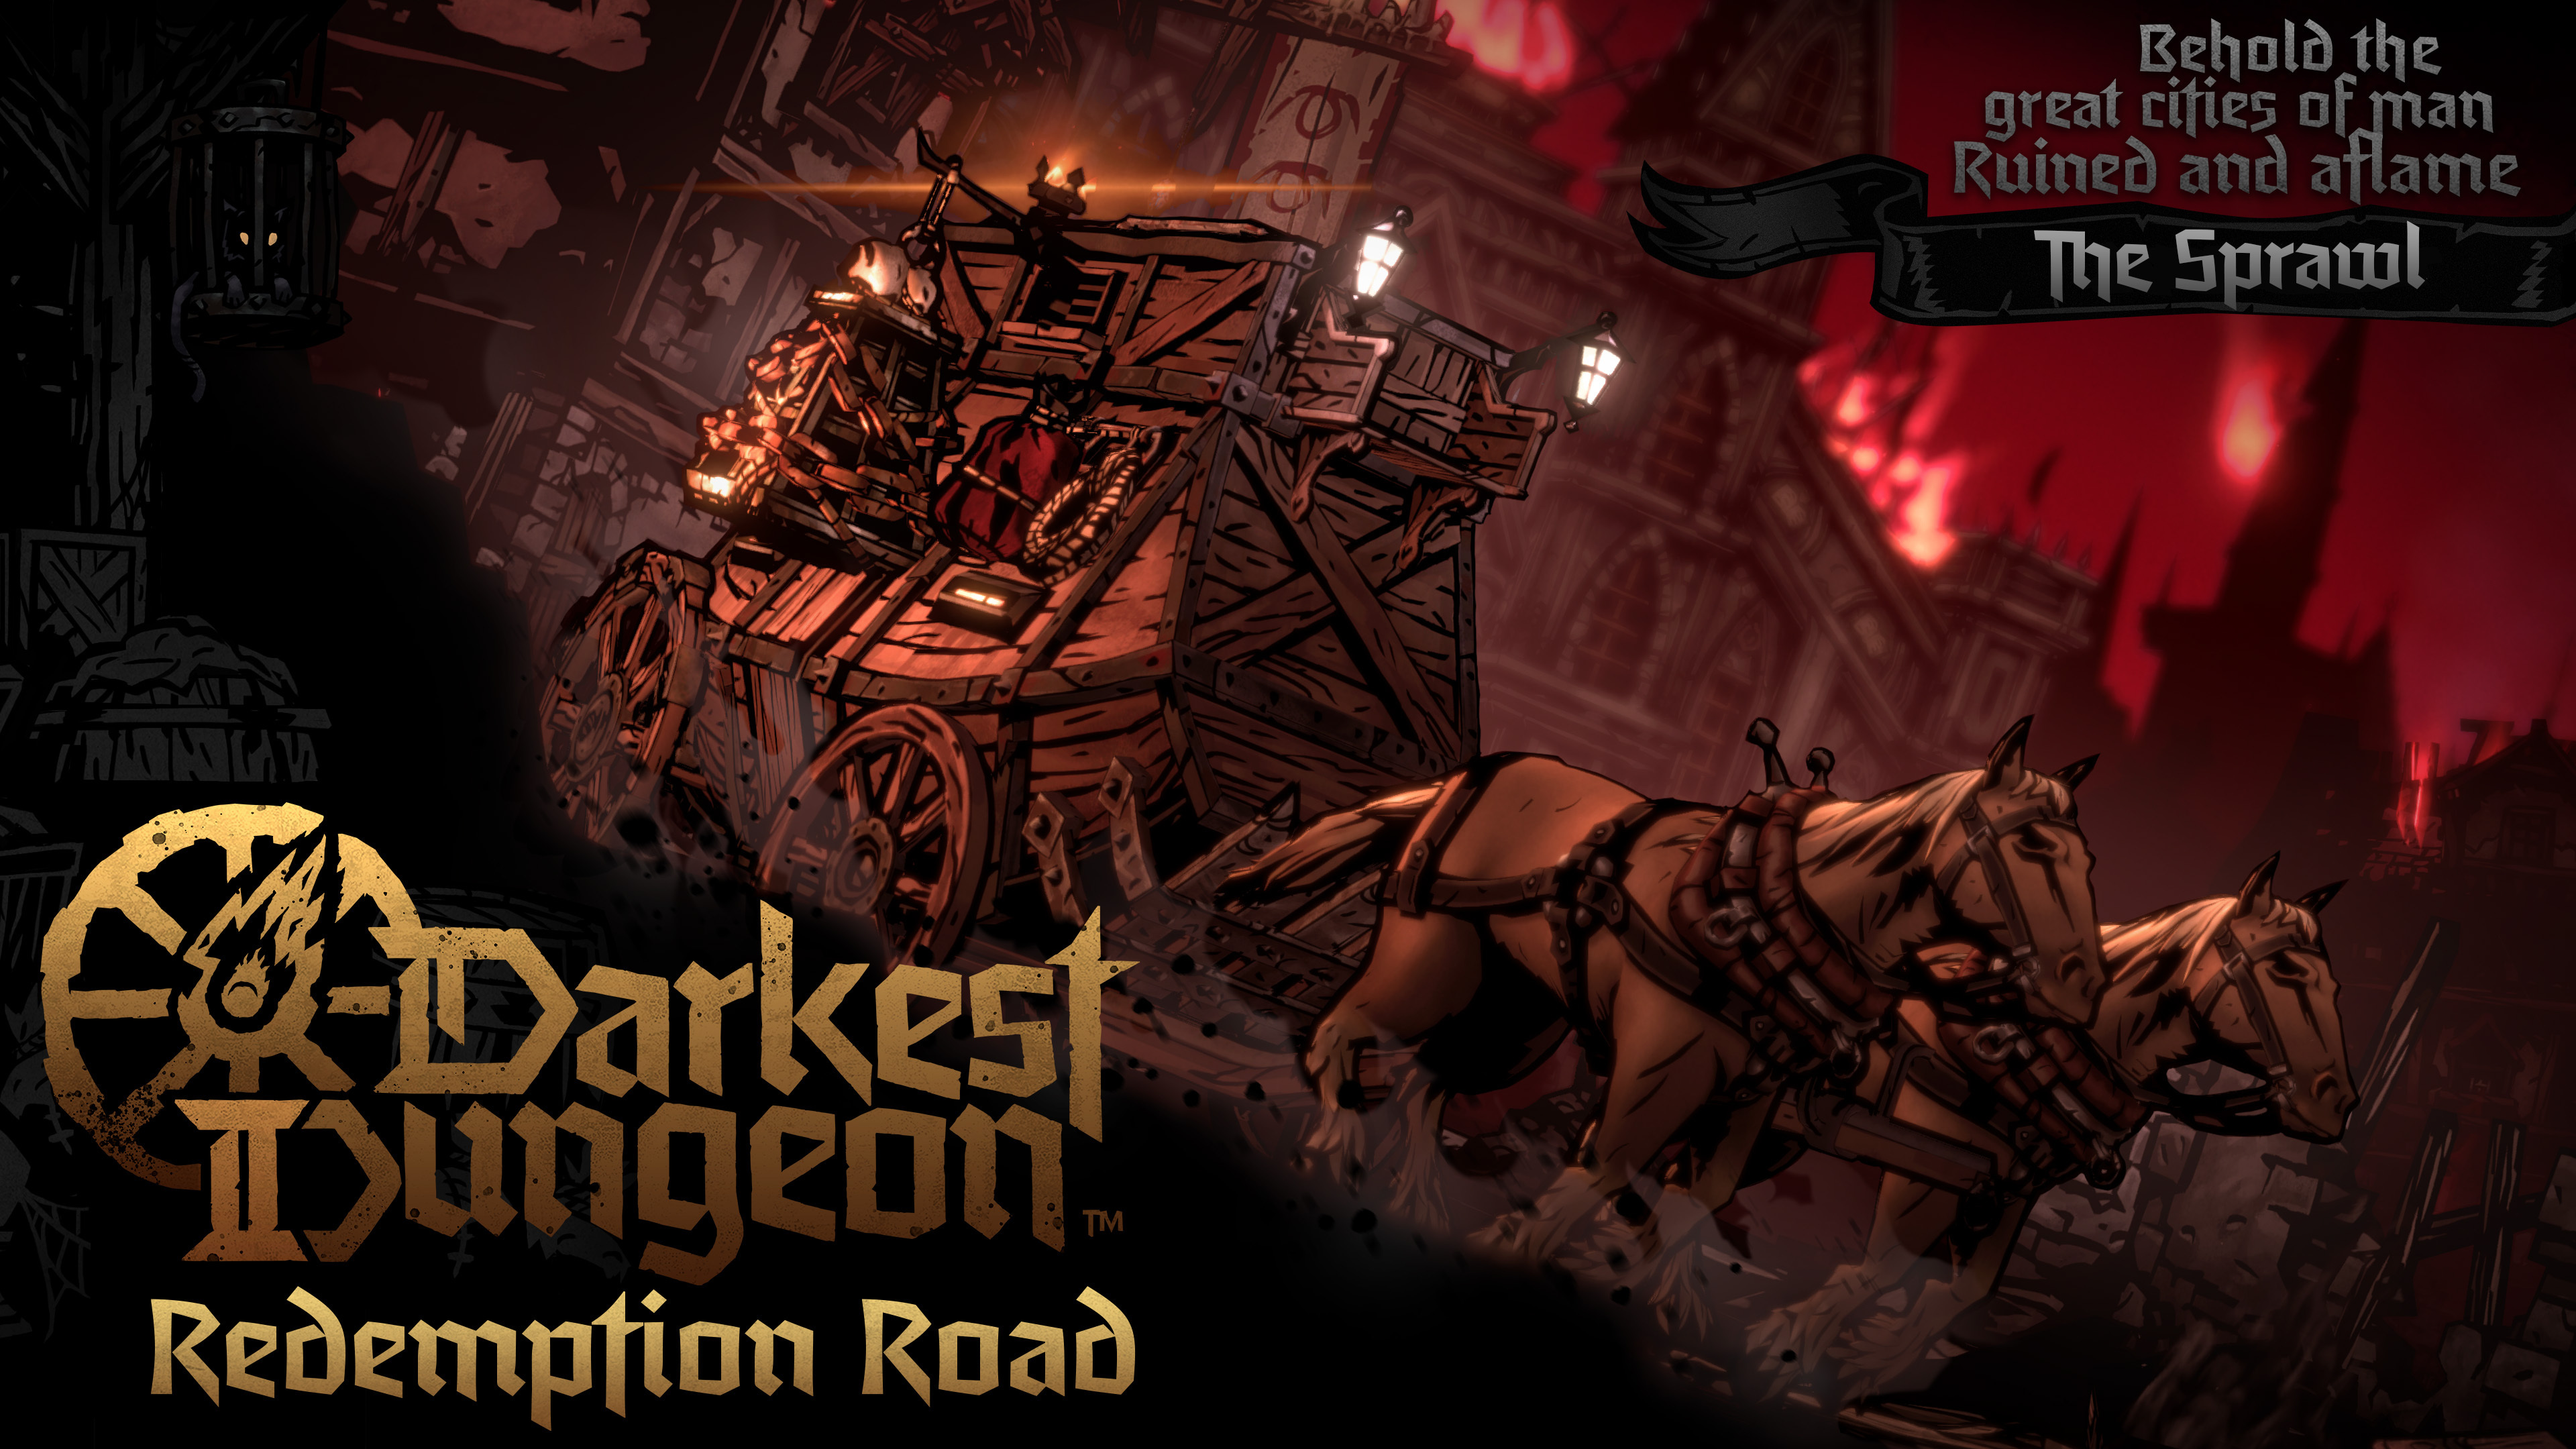 Darkest Dungeon II’s “Redemption Road” update launches today!